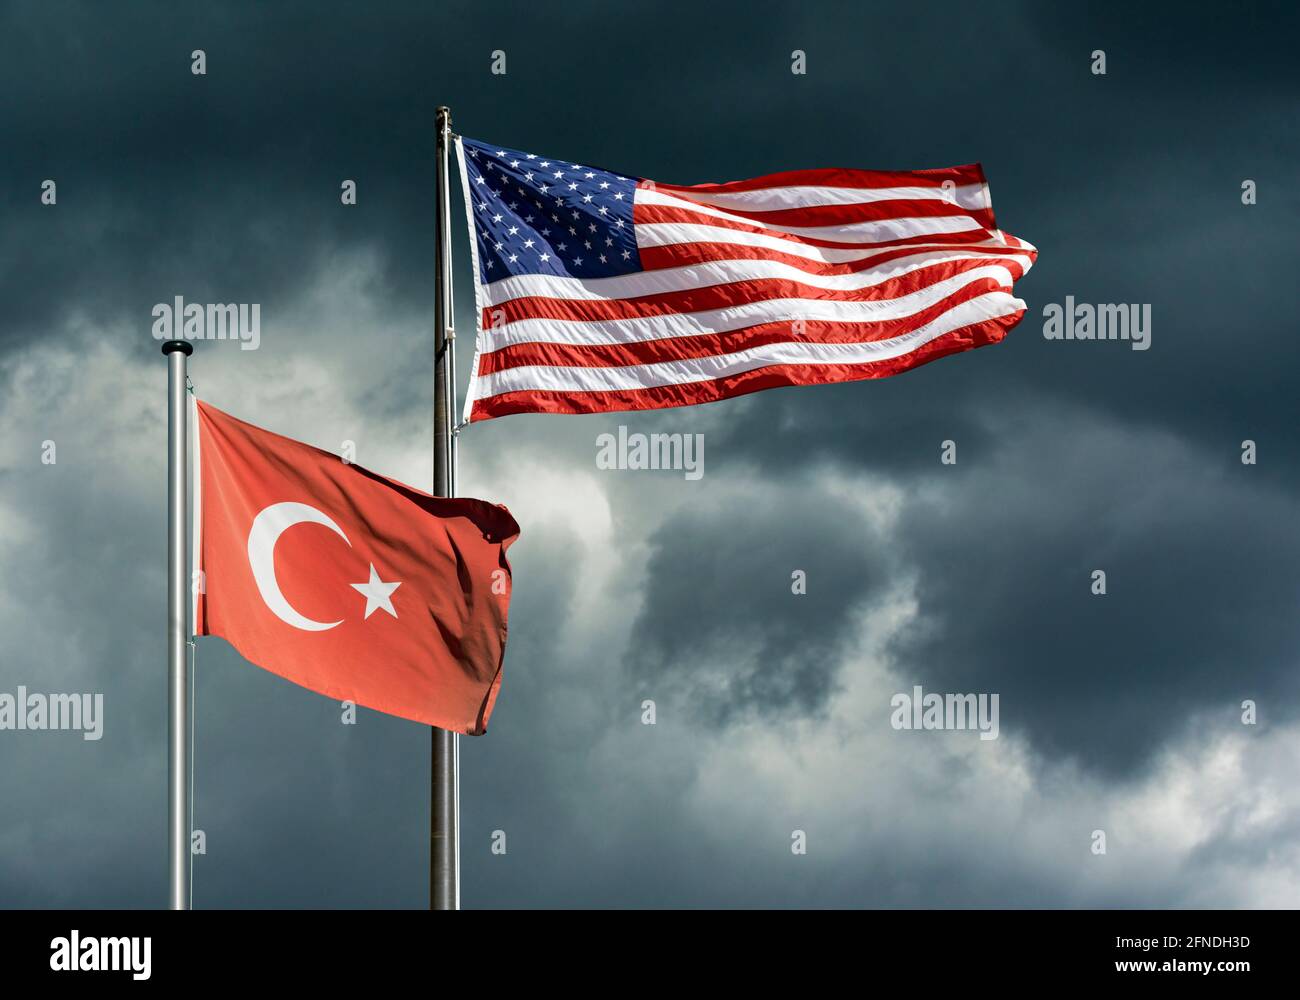 Bandiere di stato di Stati Uniti e Turchia che si battono davanti a un cielo oscuro e tempestoso, immagine simbolica di difficili relazioni politiche tra Stati Uniti e Turchia Foto Stock